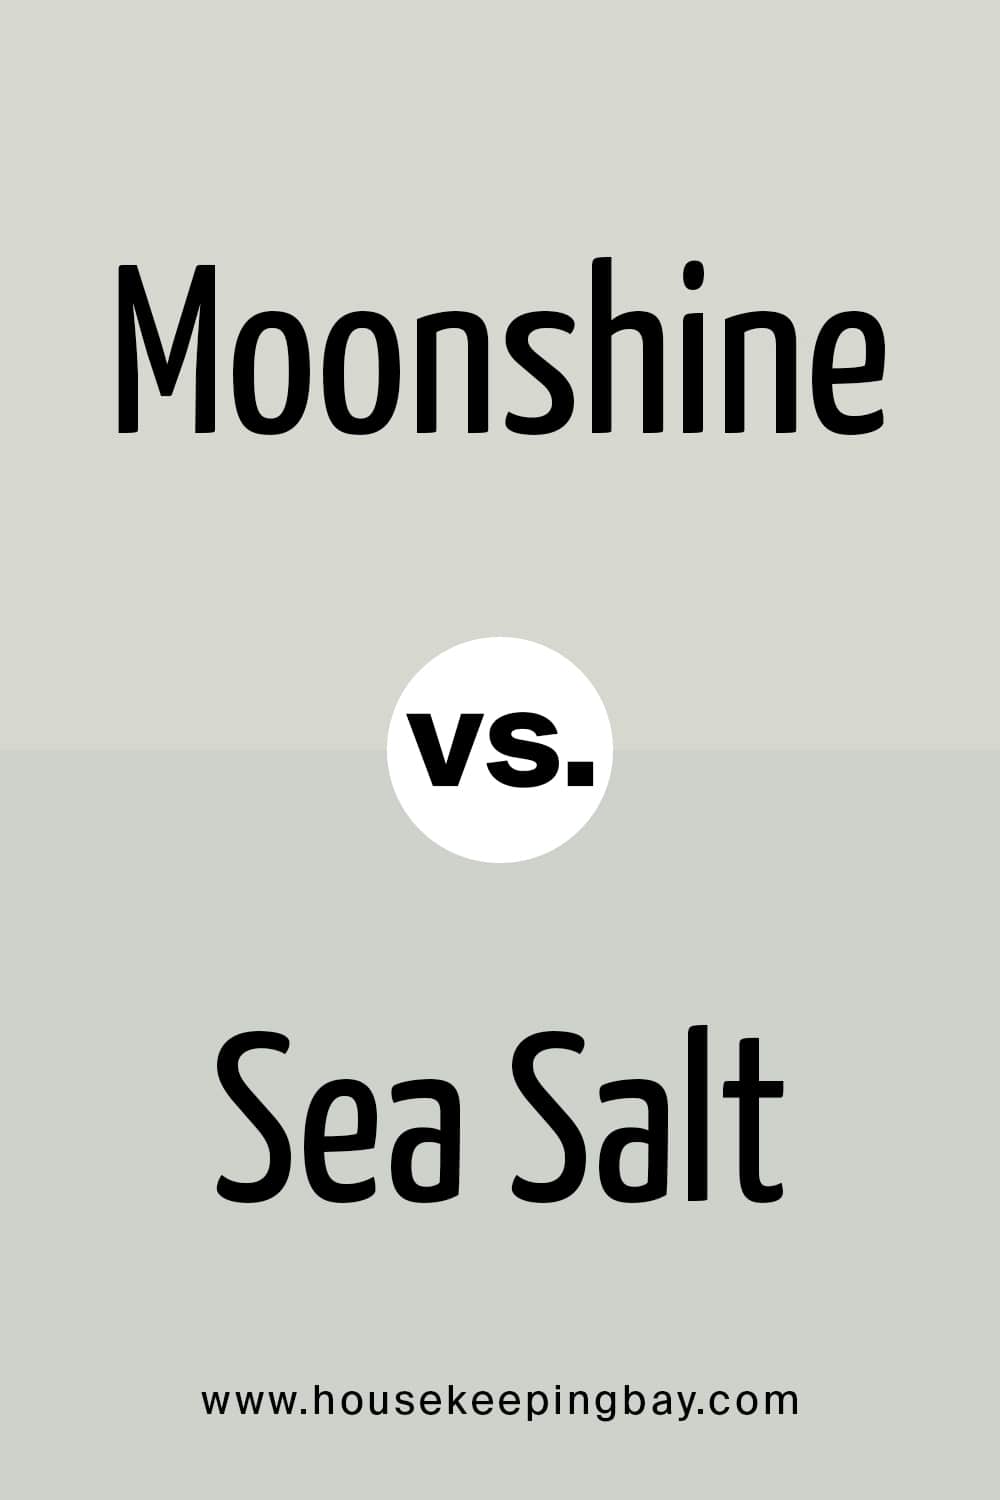 Moonshine vs Sea Salt